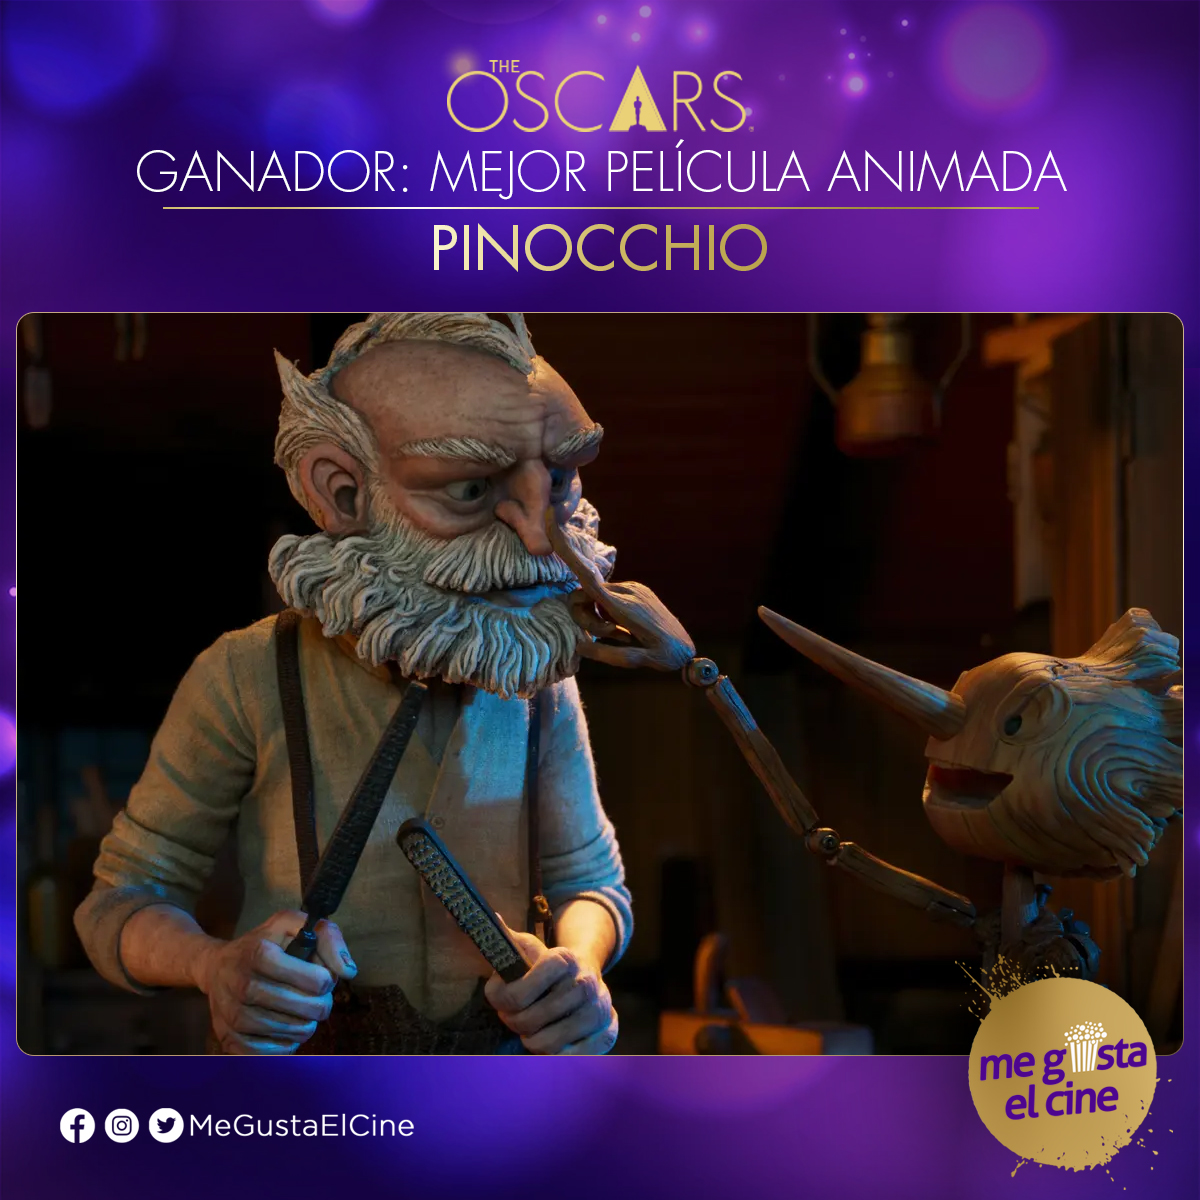 Super mega merecido, el trabajo que ha hecho Guillermo del Toro es realmente increíble.👏👏👏 #pinocchio se lleva el premio #Oscars2023 como mejor película animada.